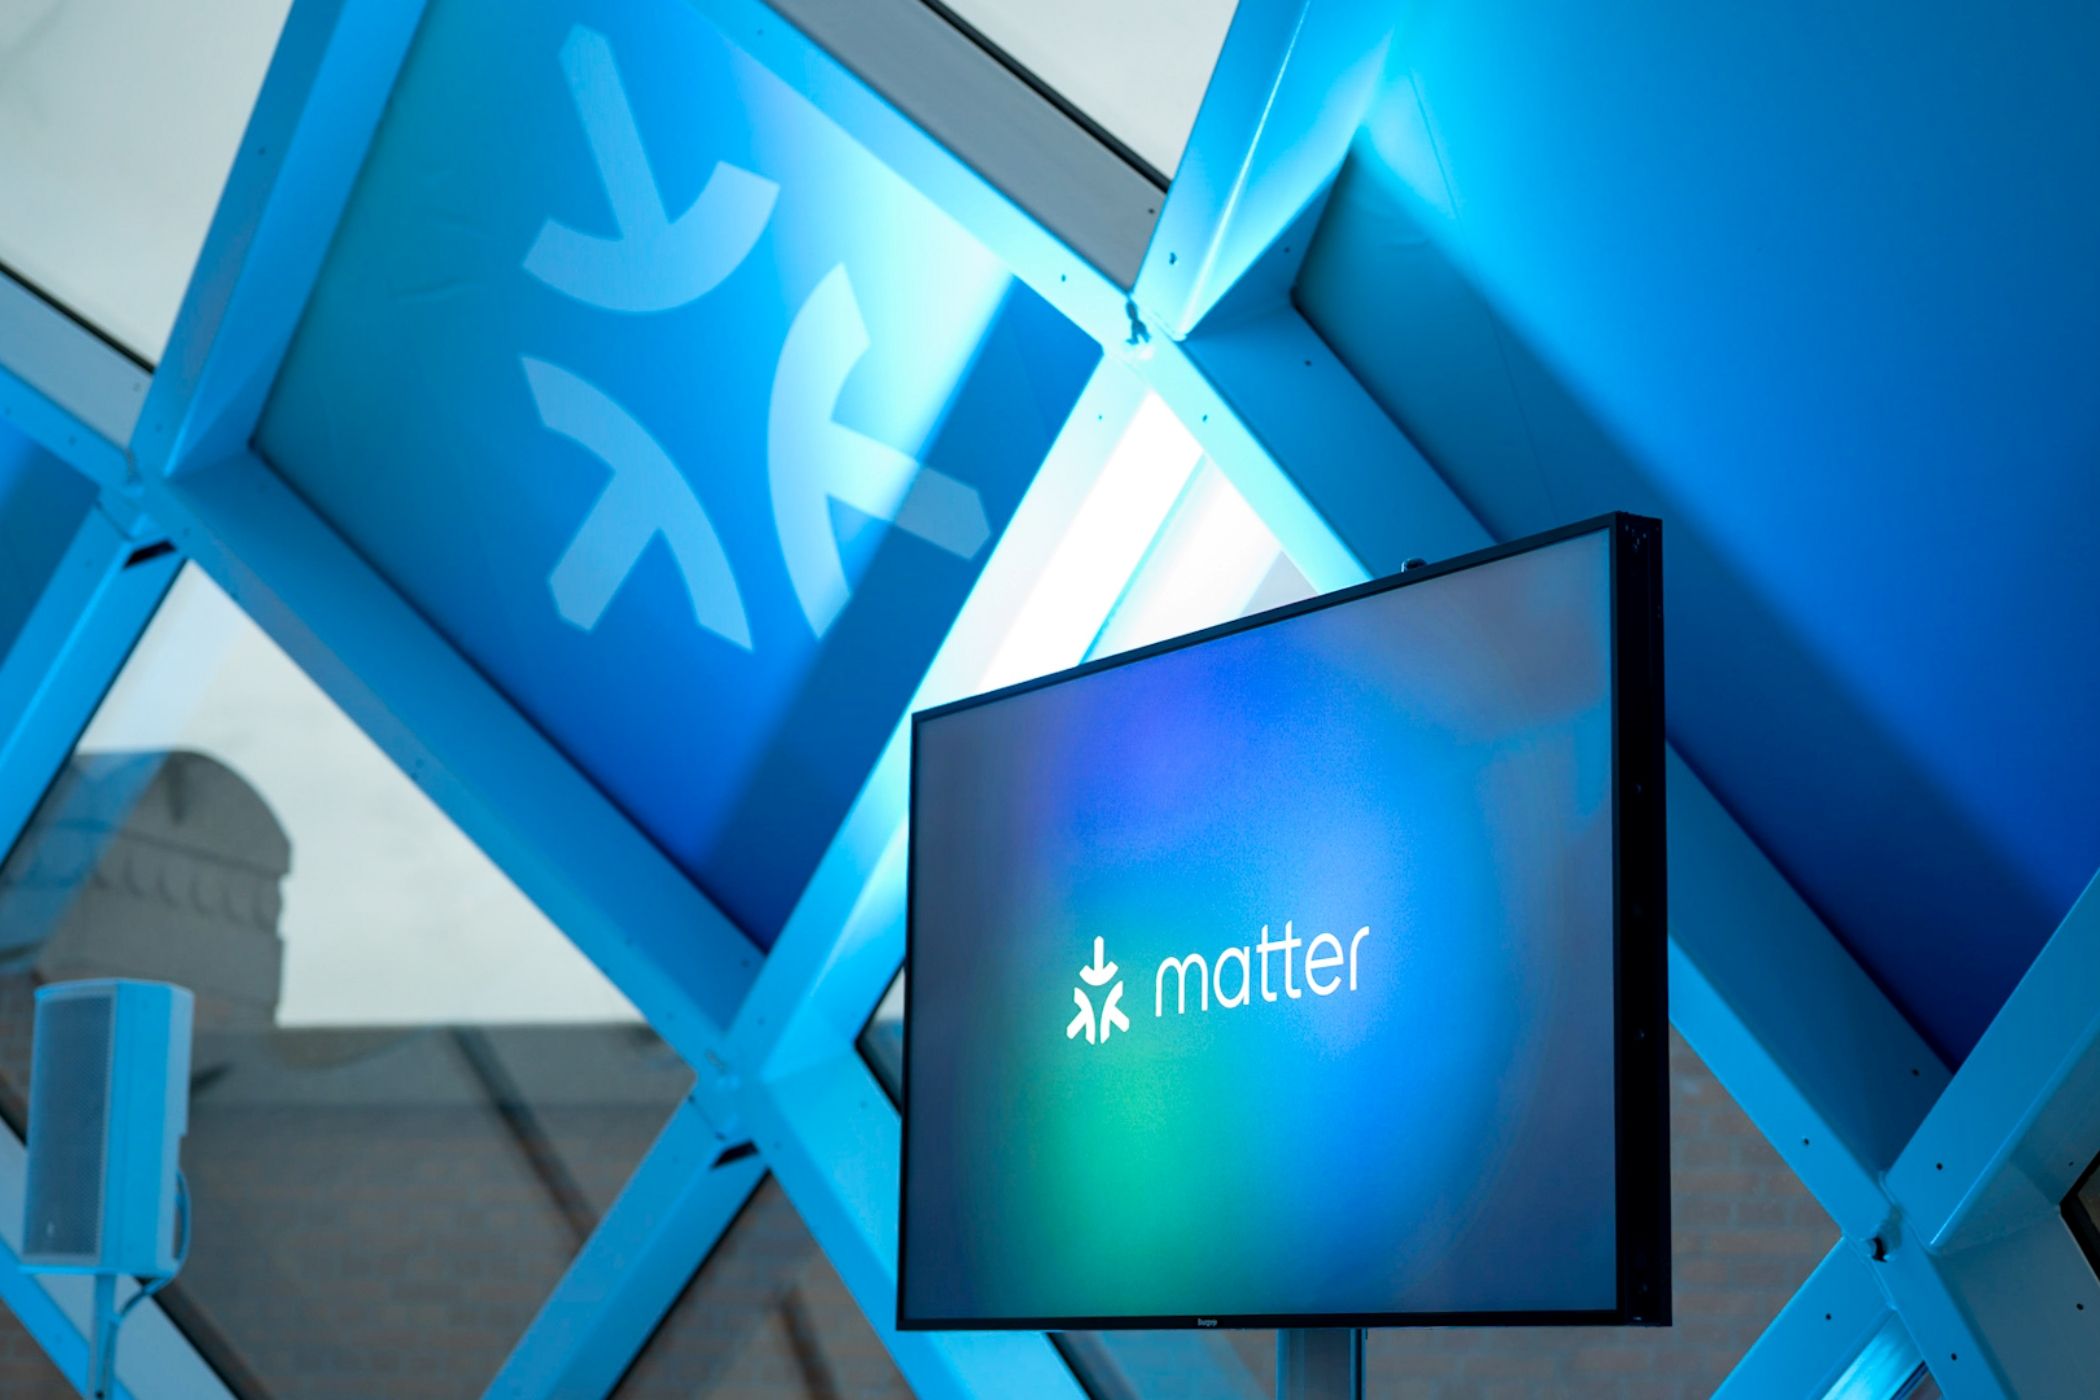 Matter logo on a TV.